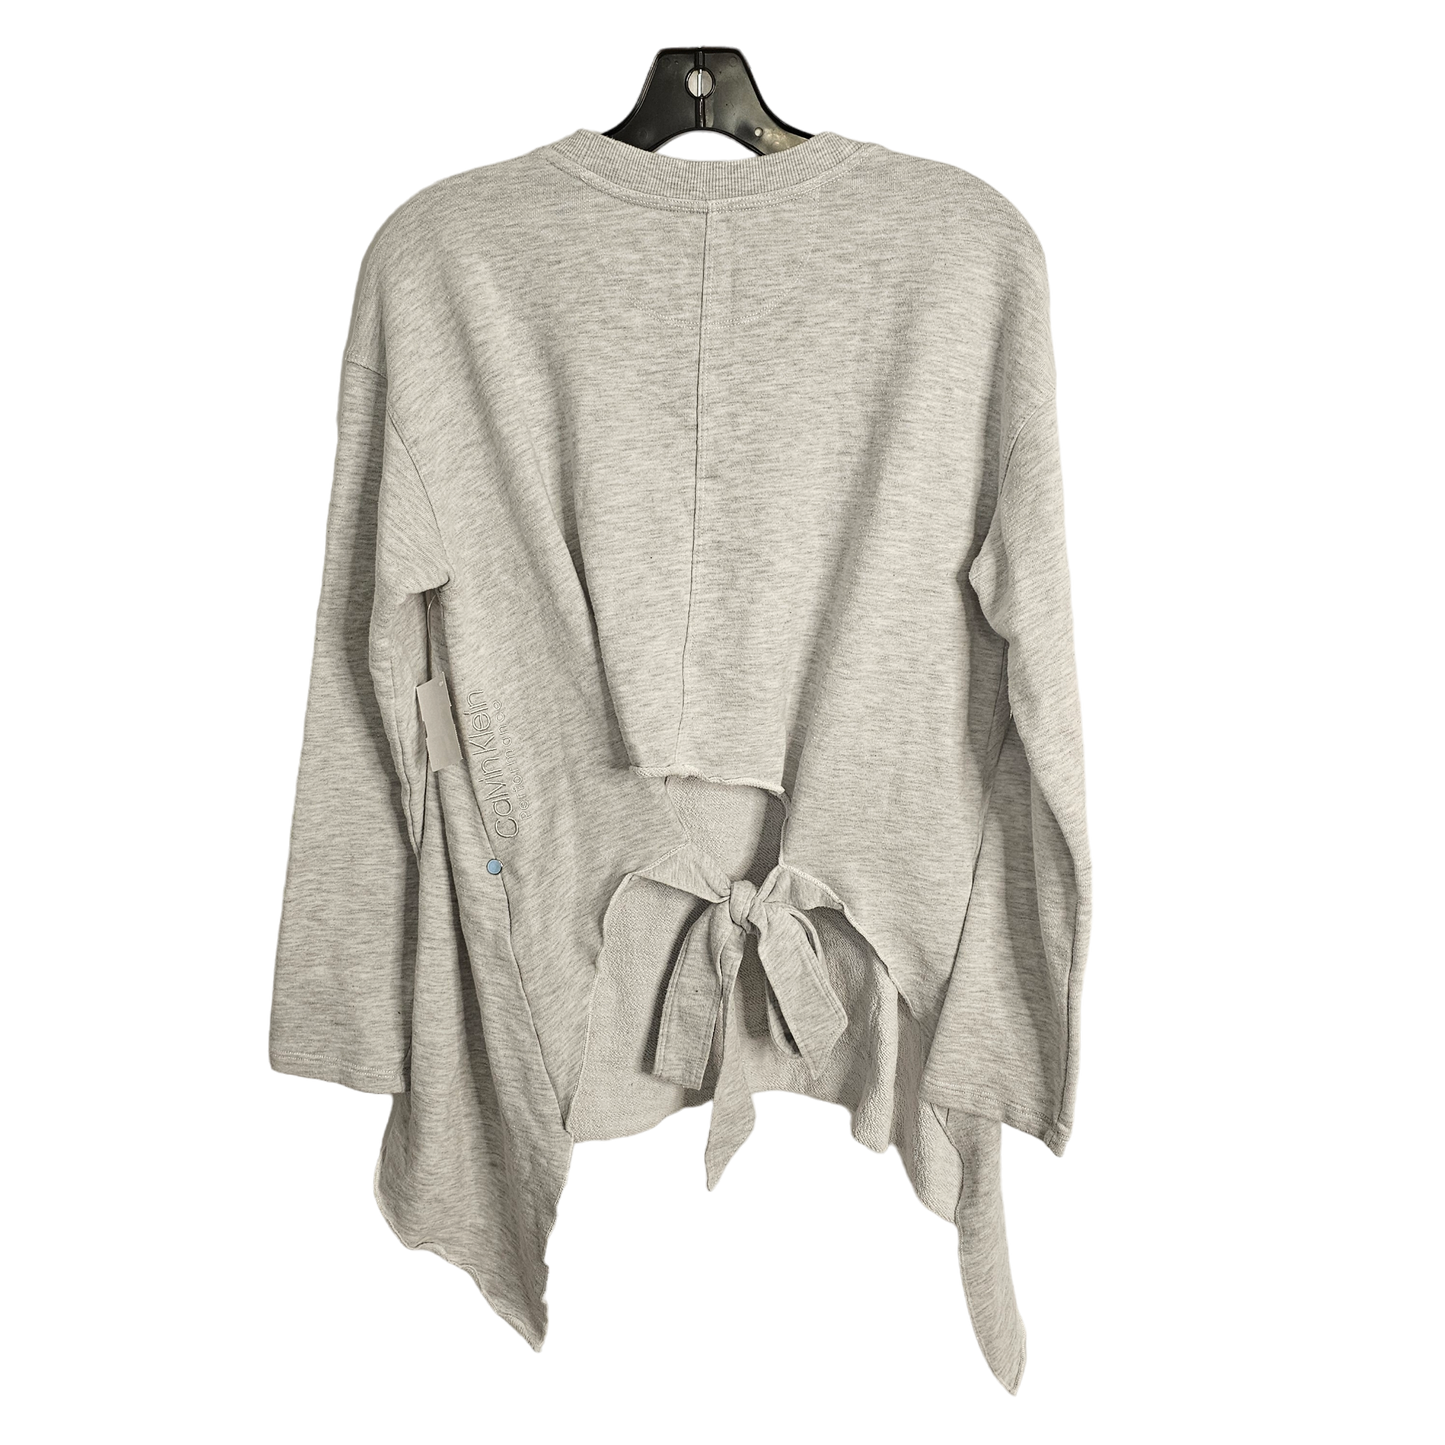 Sweatshirt Crewneck By Calvin Klein Performance  Size: M